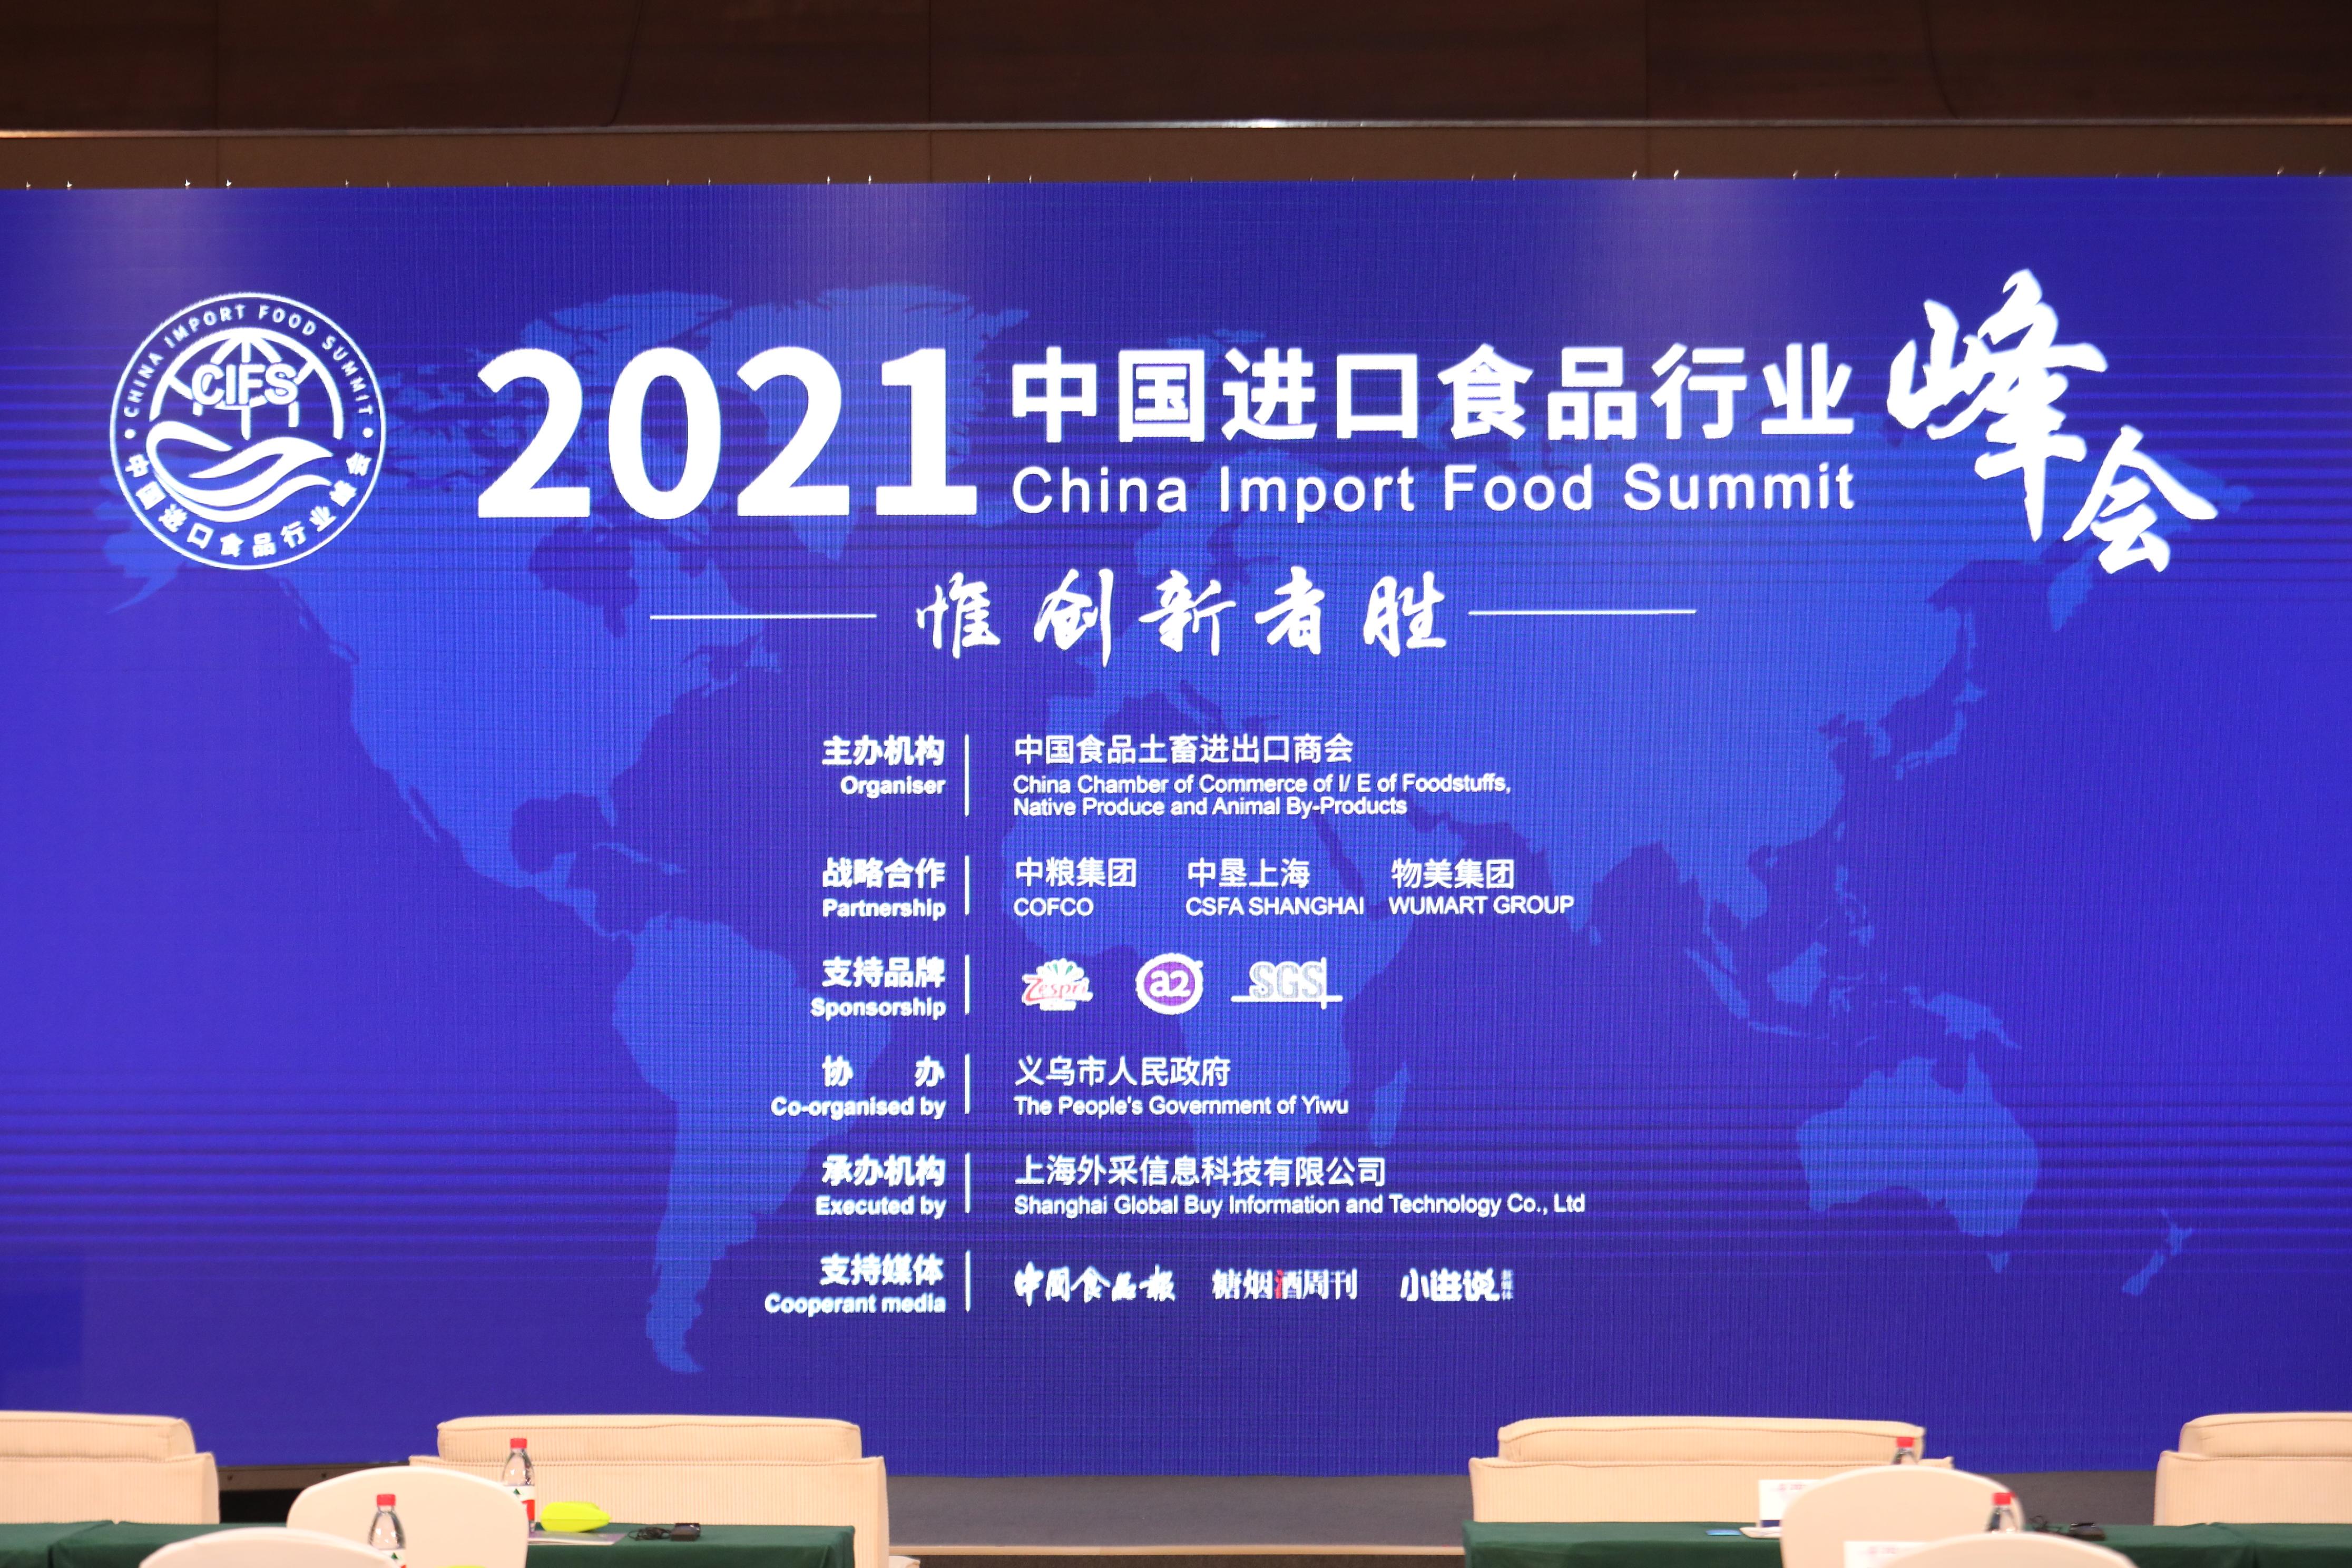 值此之际,由中国食品土畜进出口商会主办的2021中国进口食品行业峰会